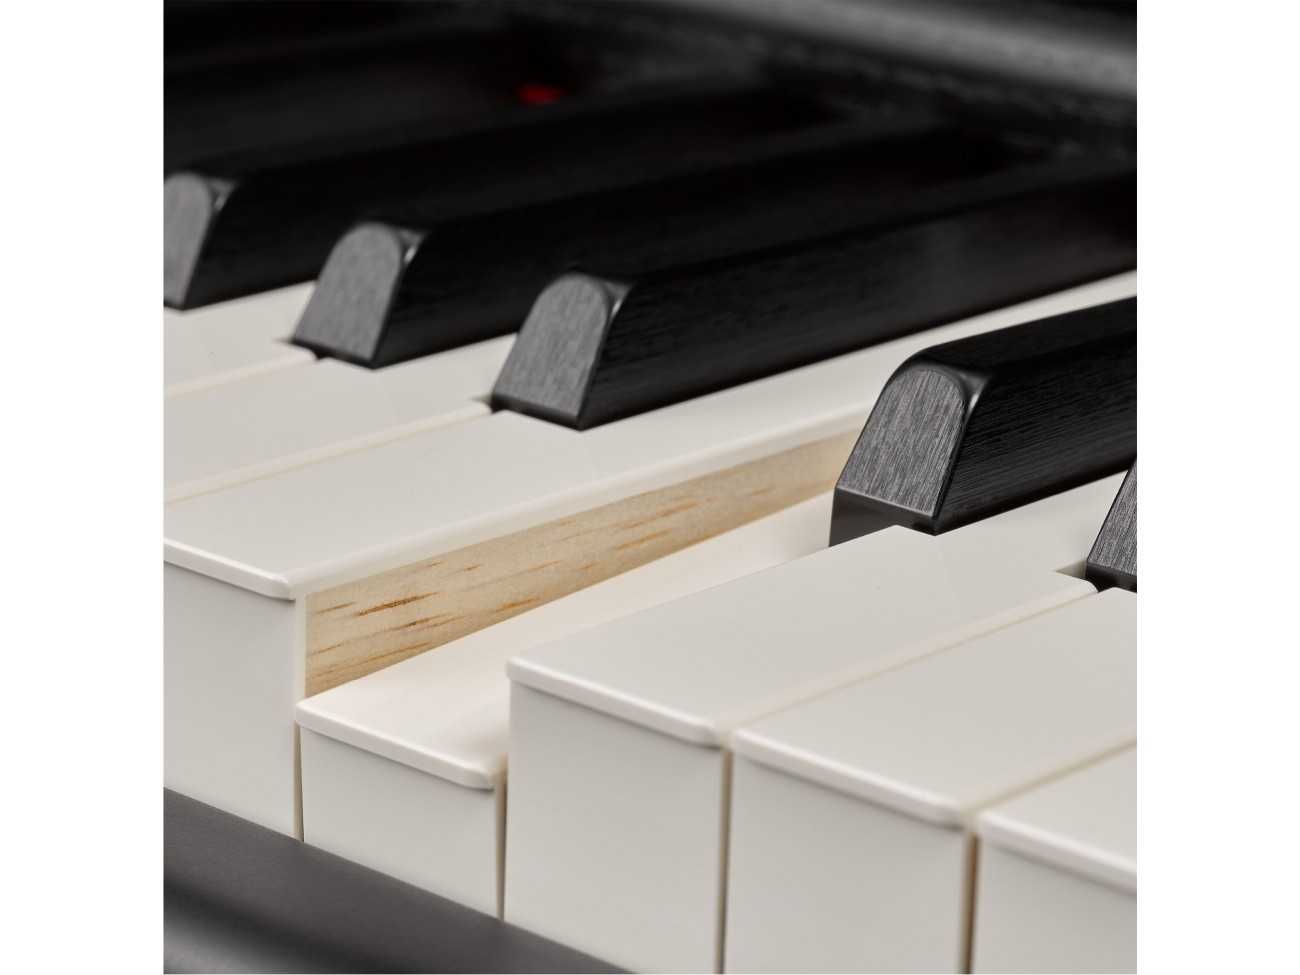 Nowe piano  cyfrowe YAMAHA P-515 b(nie wyciągane z kartonu) czarne